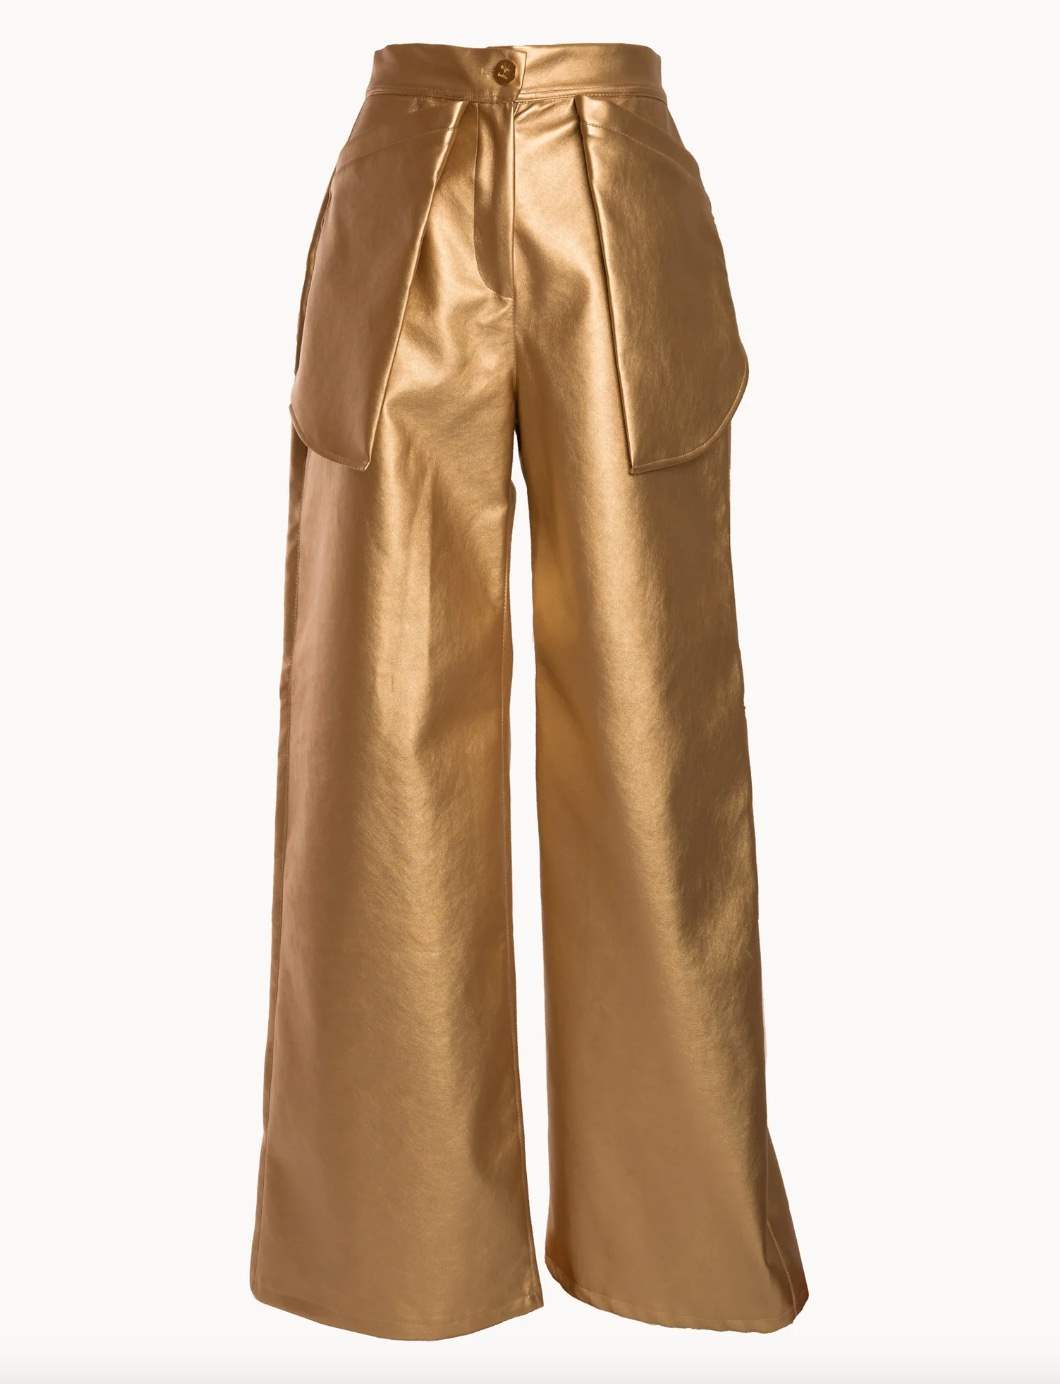 Pantalones dorados de Pilar Rubio